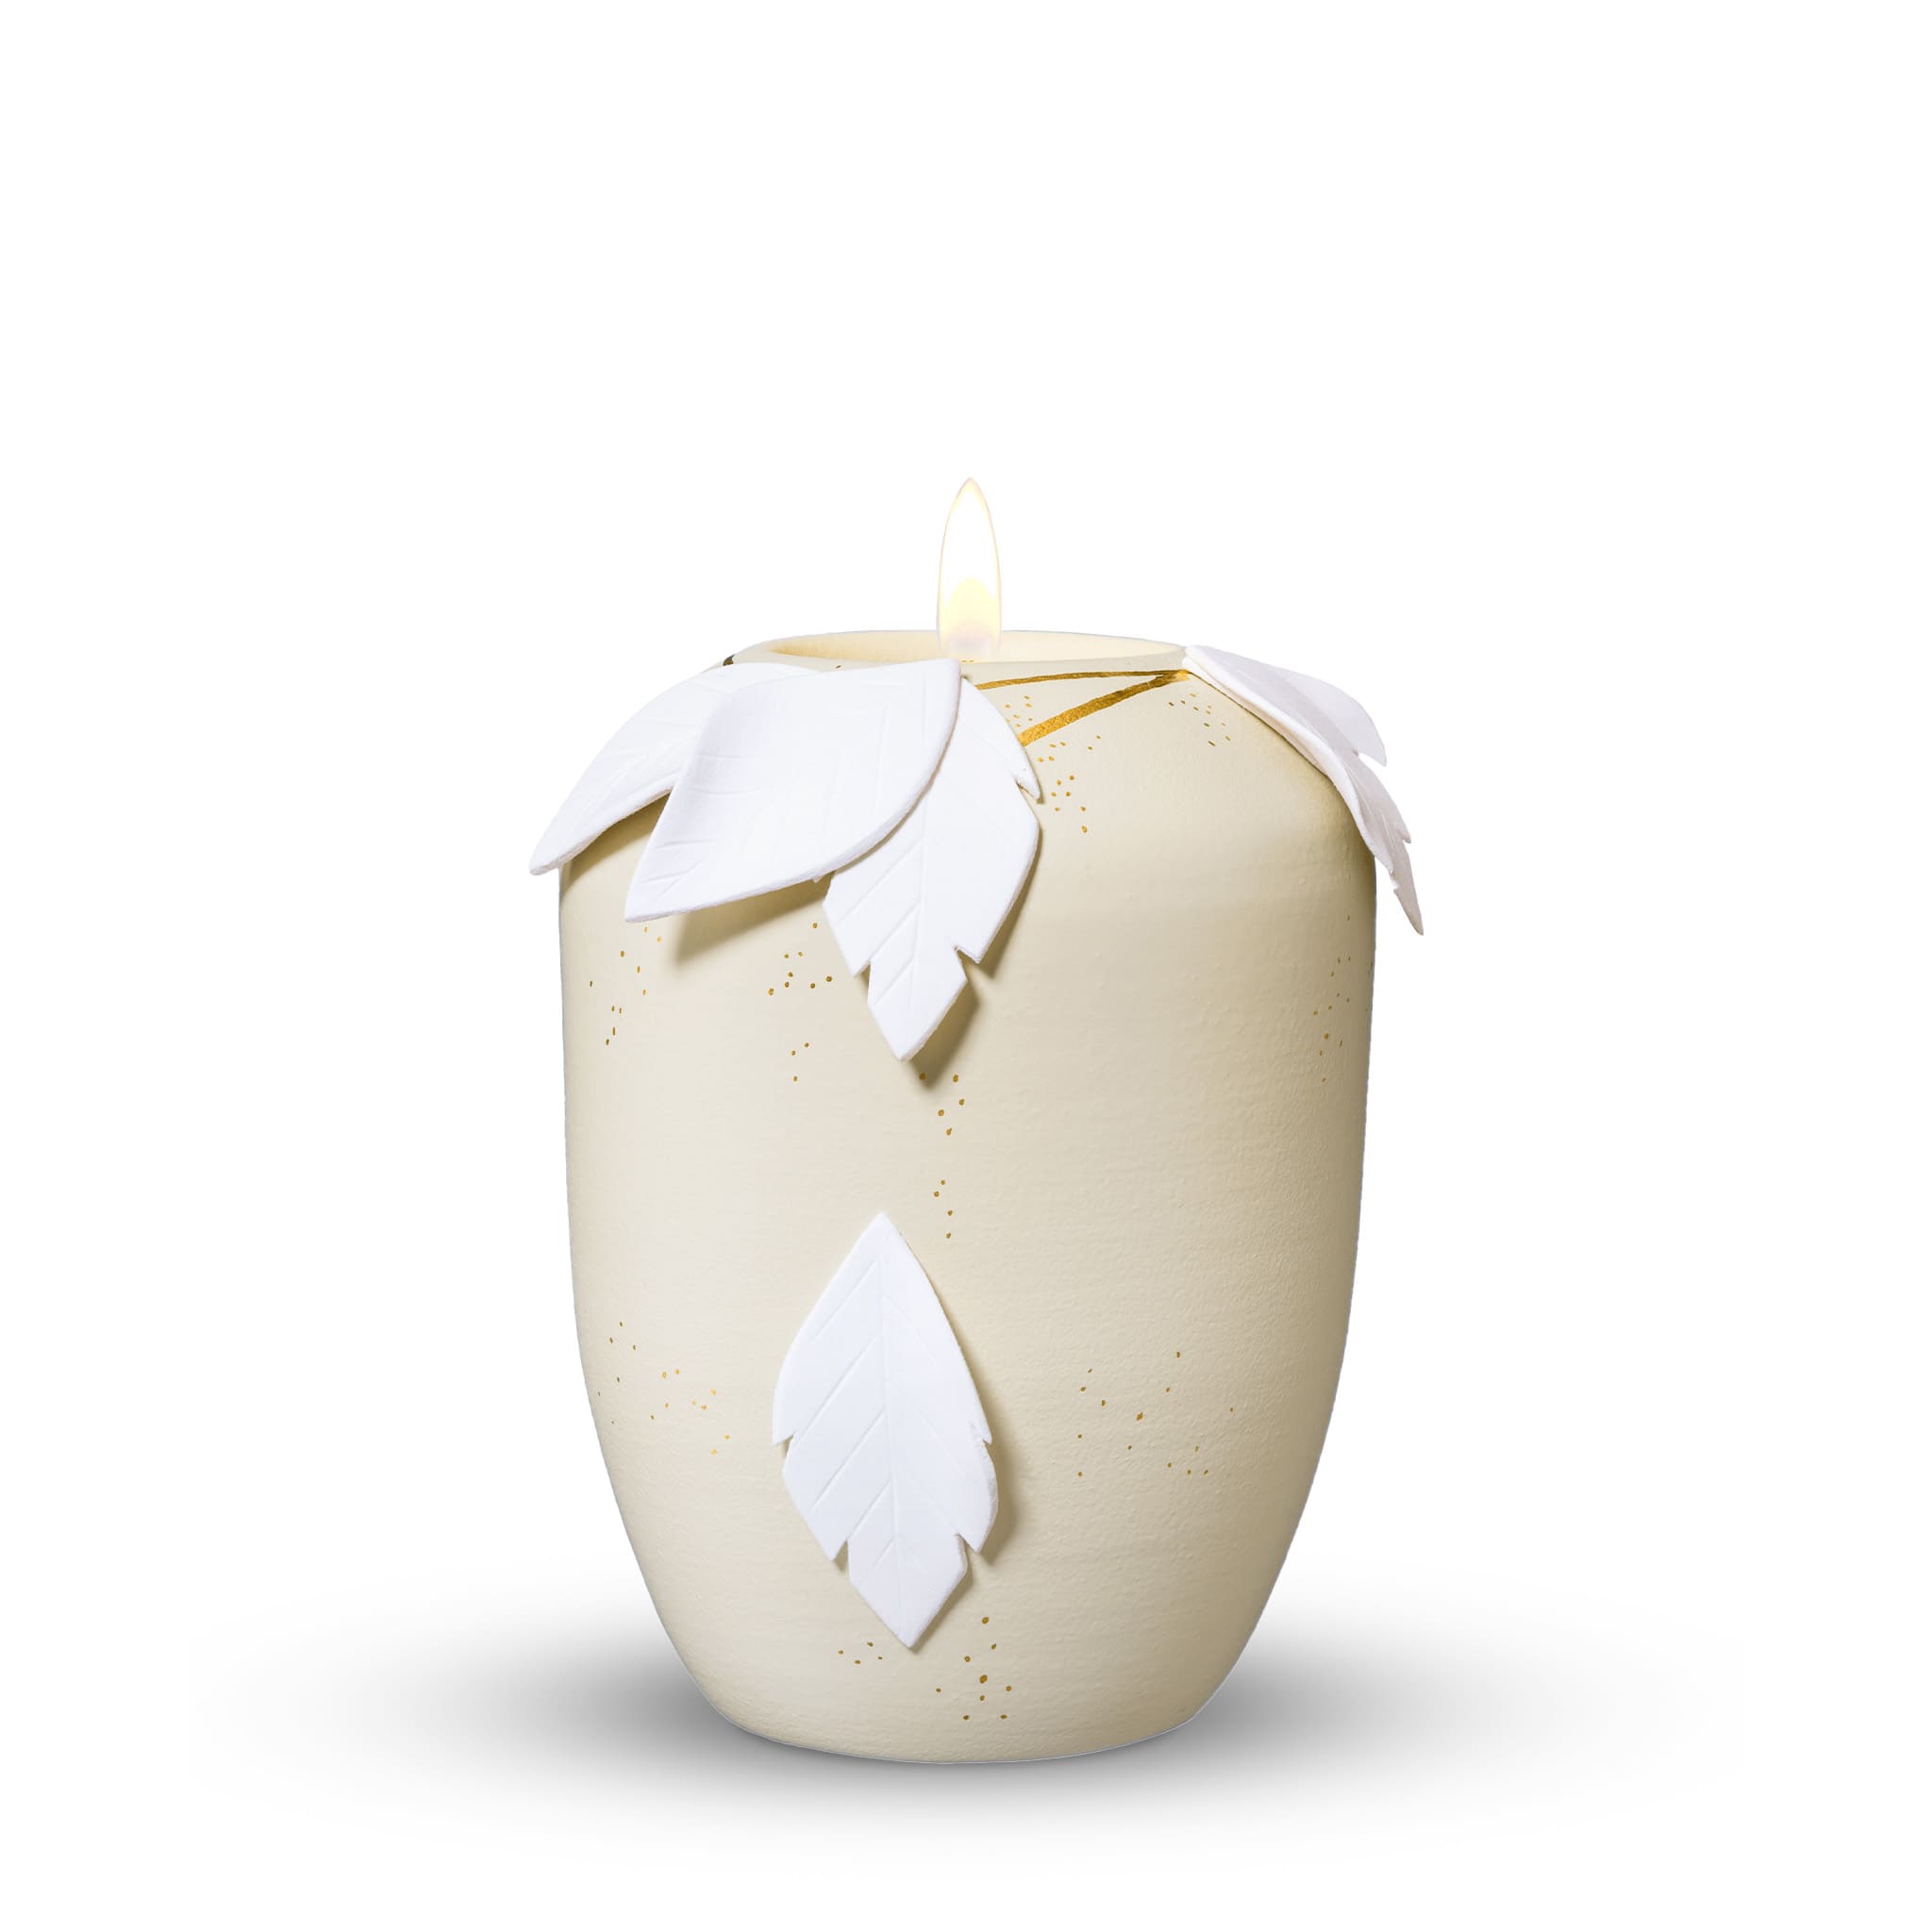 Gedenklicht, glint-seashell lackiert, Design 'fallende Blätter 3D'